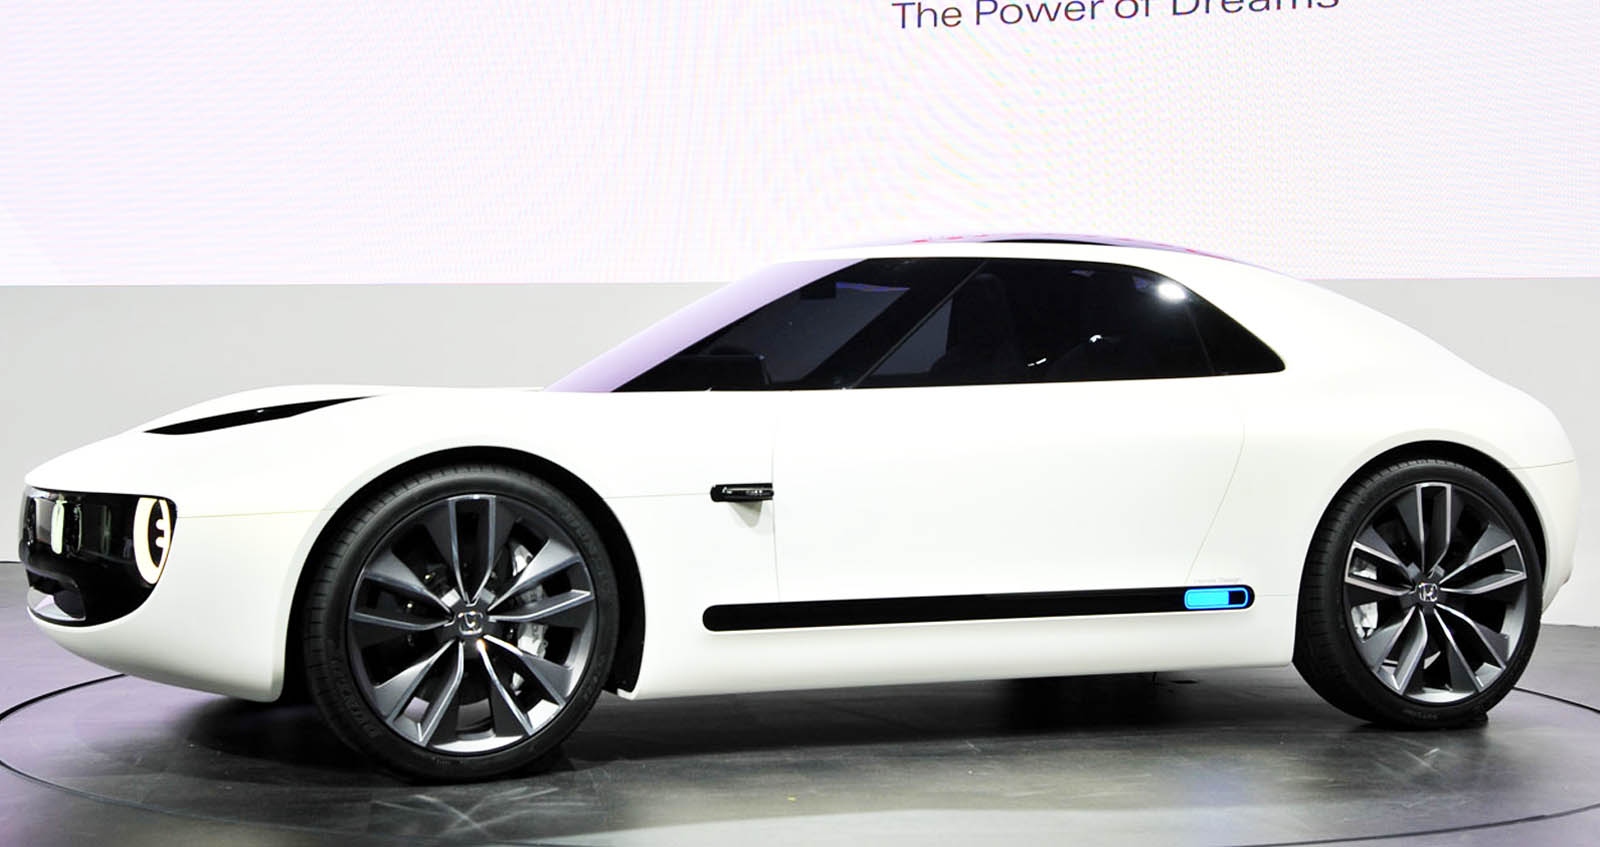 HONDA ร่วมมือกับ Google เพื่อฝังบริการที่เชื่อมต่อในรถยนต์รุ่นใหม่